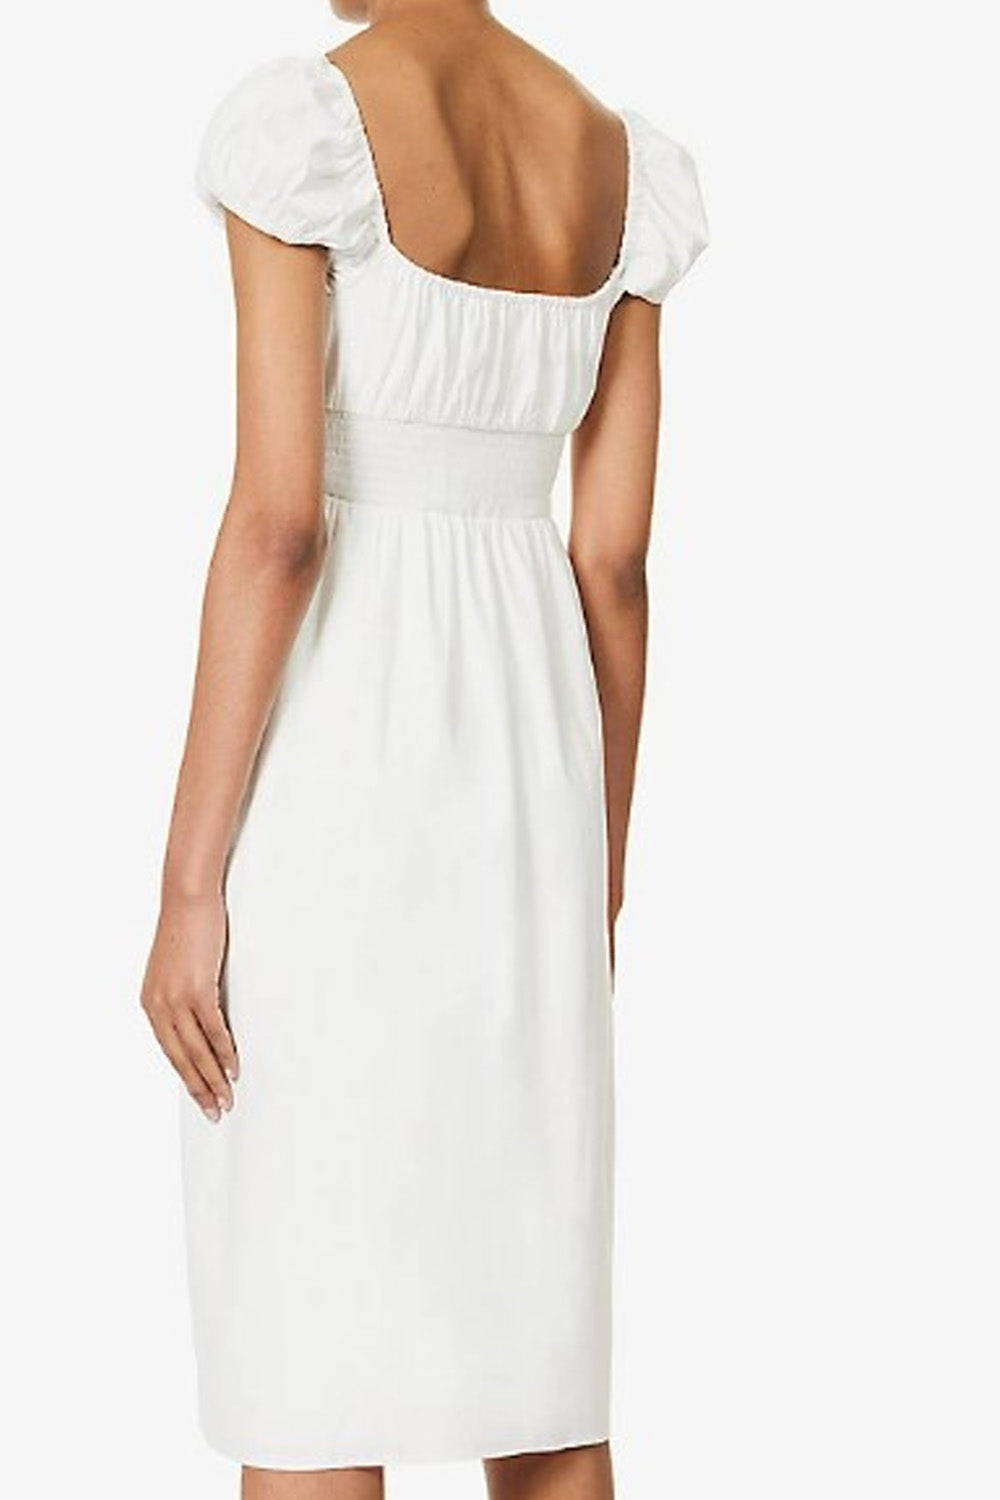 Nebula White Dress